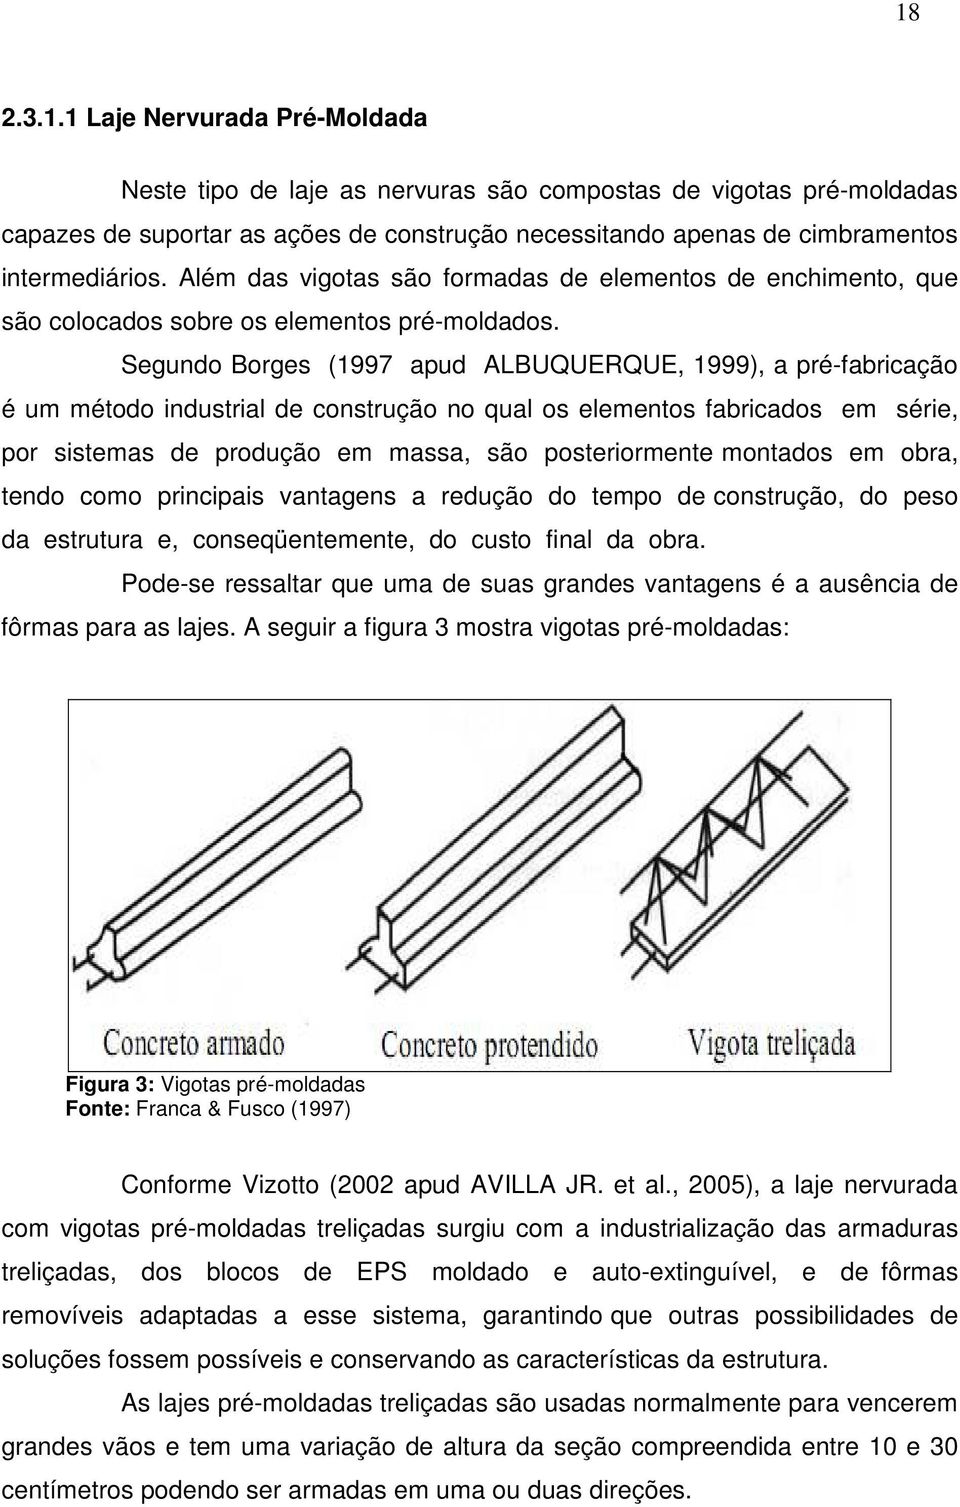 Segundo Borges (1997 apud ALBUQUERQUE, 1999), a pré-fabricação é um método industrial de construção no qual os elementos fabricados em série, por sistemas de produção em massa, são posteriormente